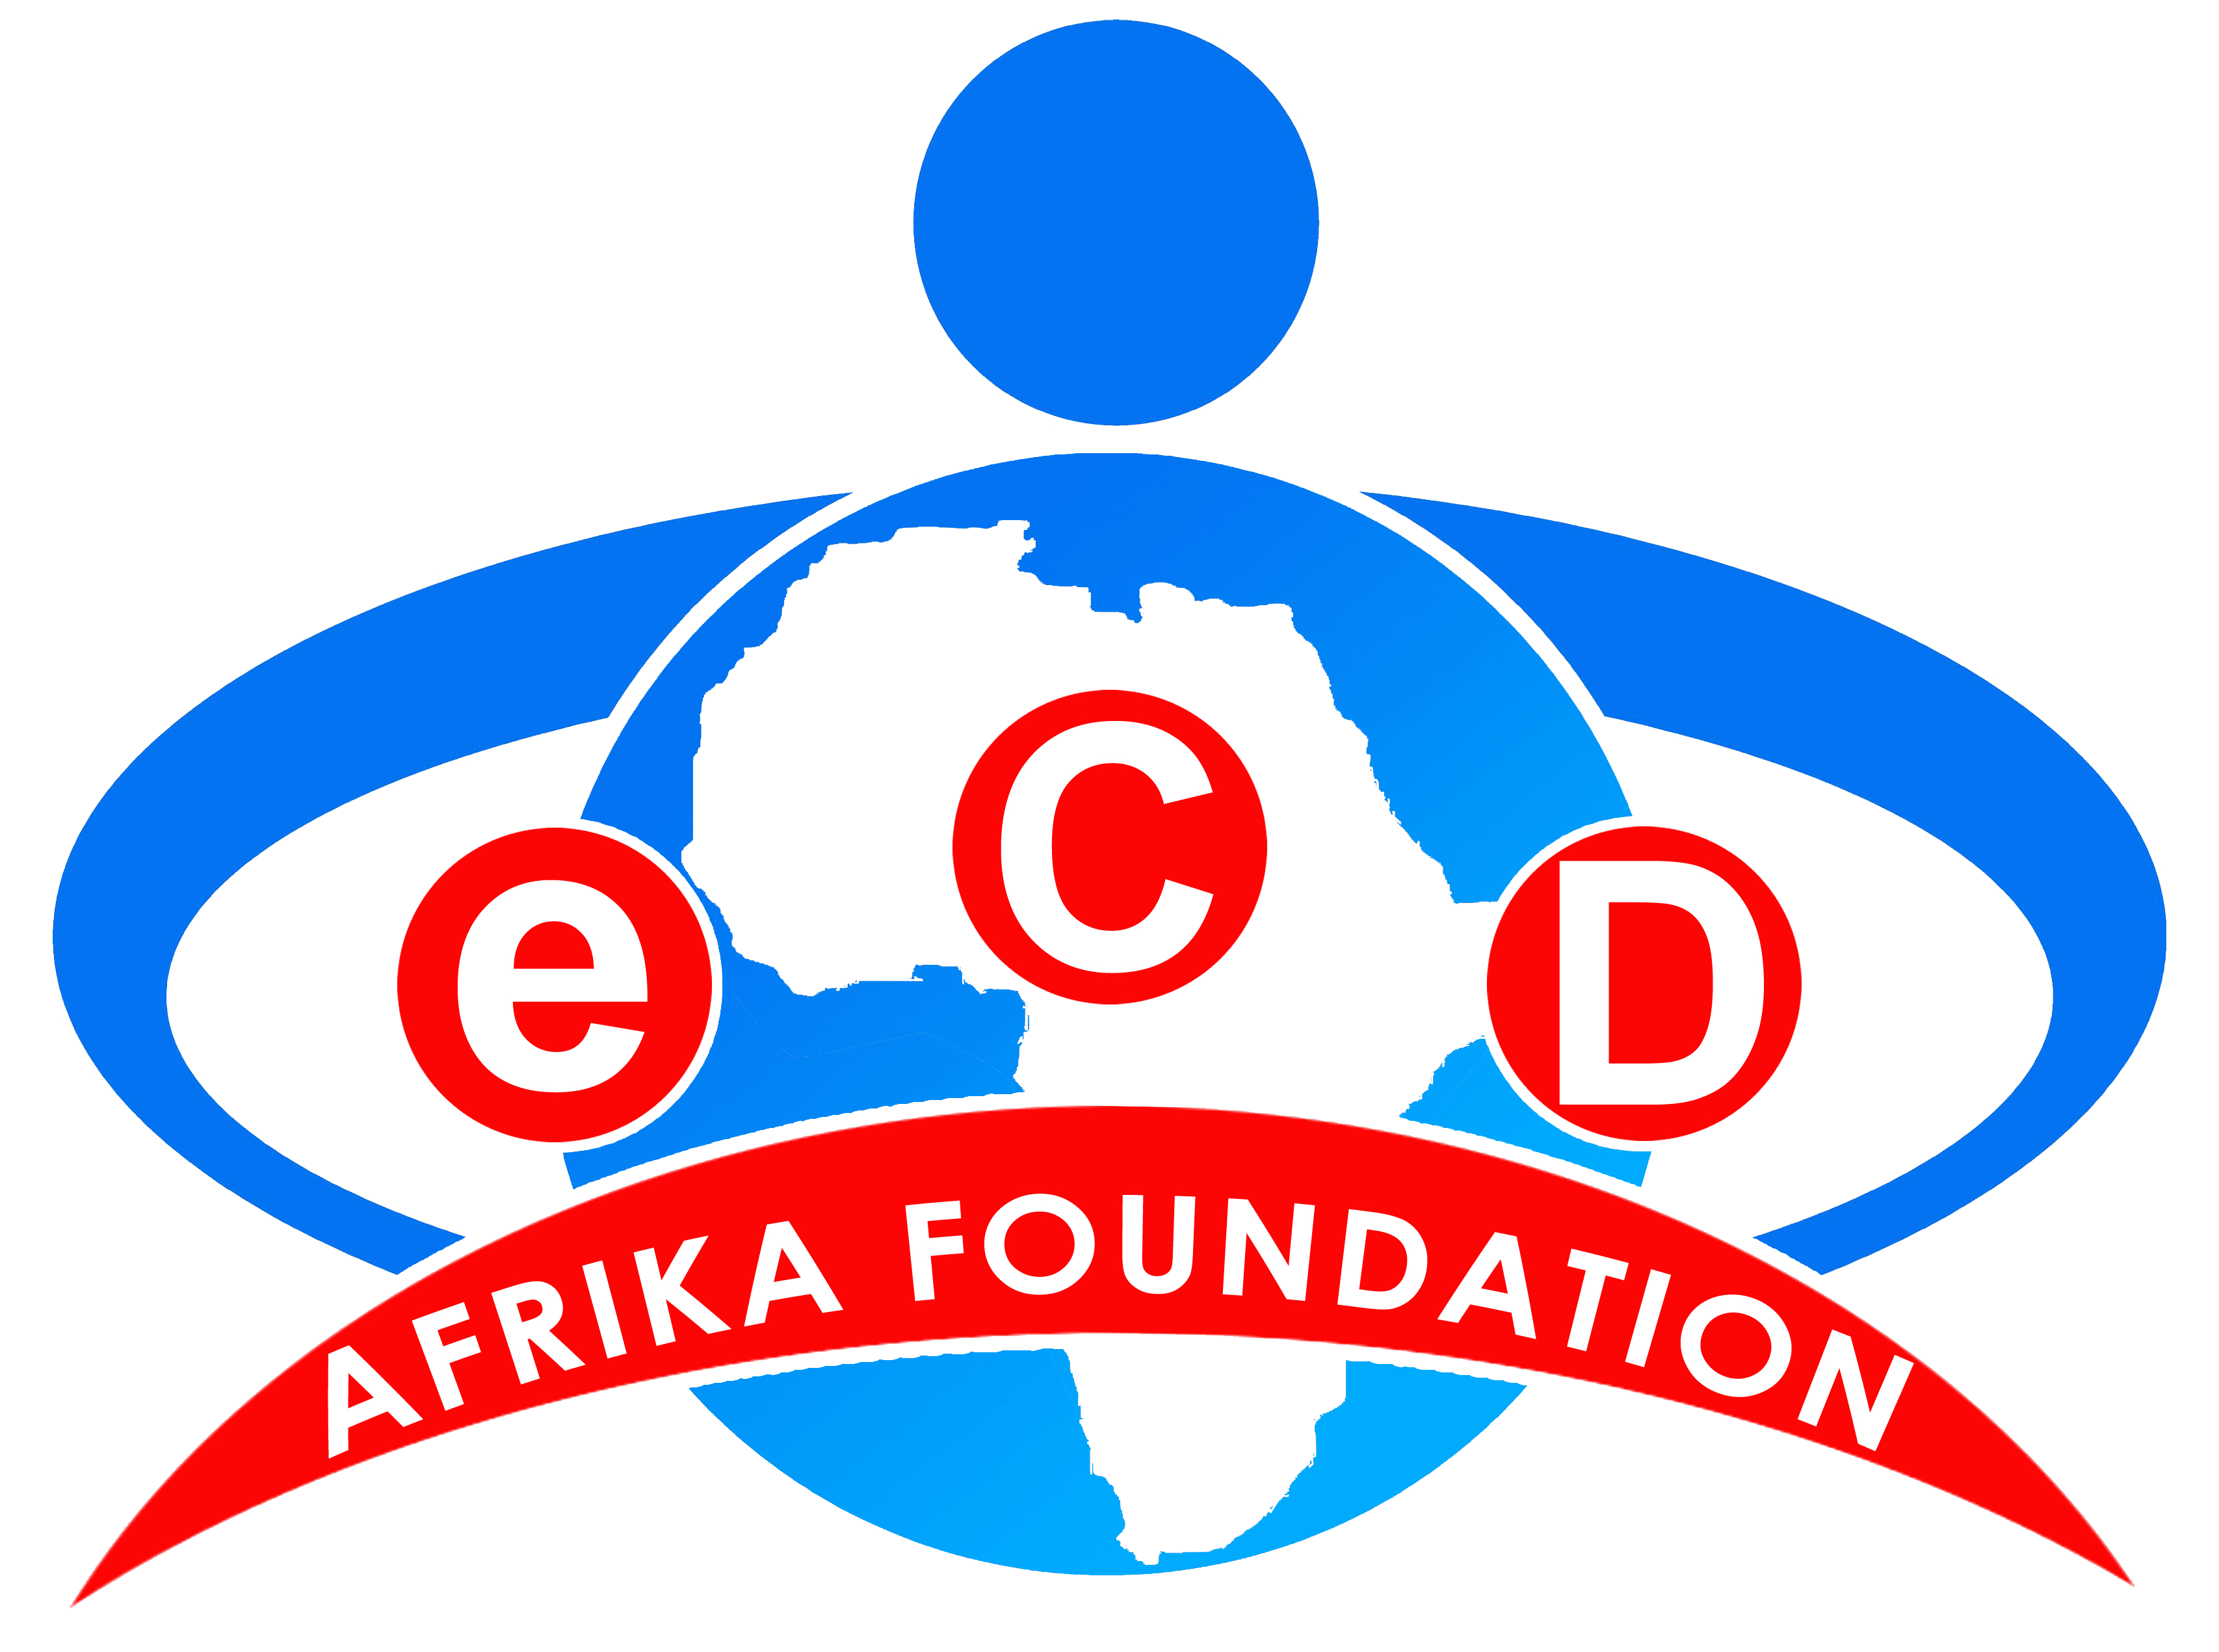 eCD Afrika Foundation